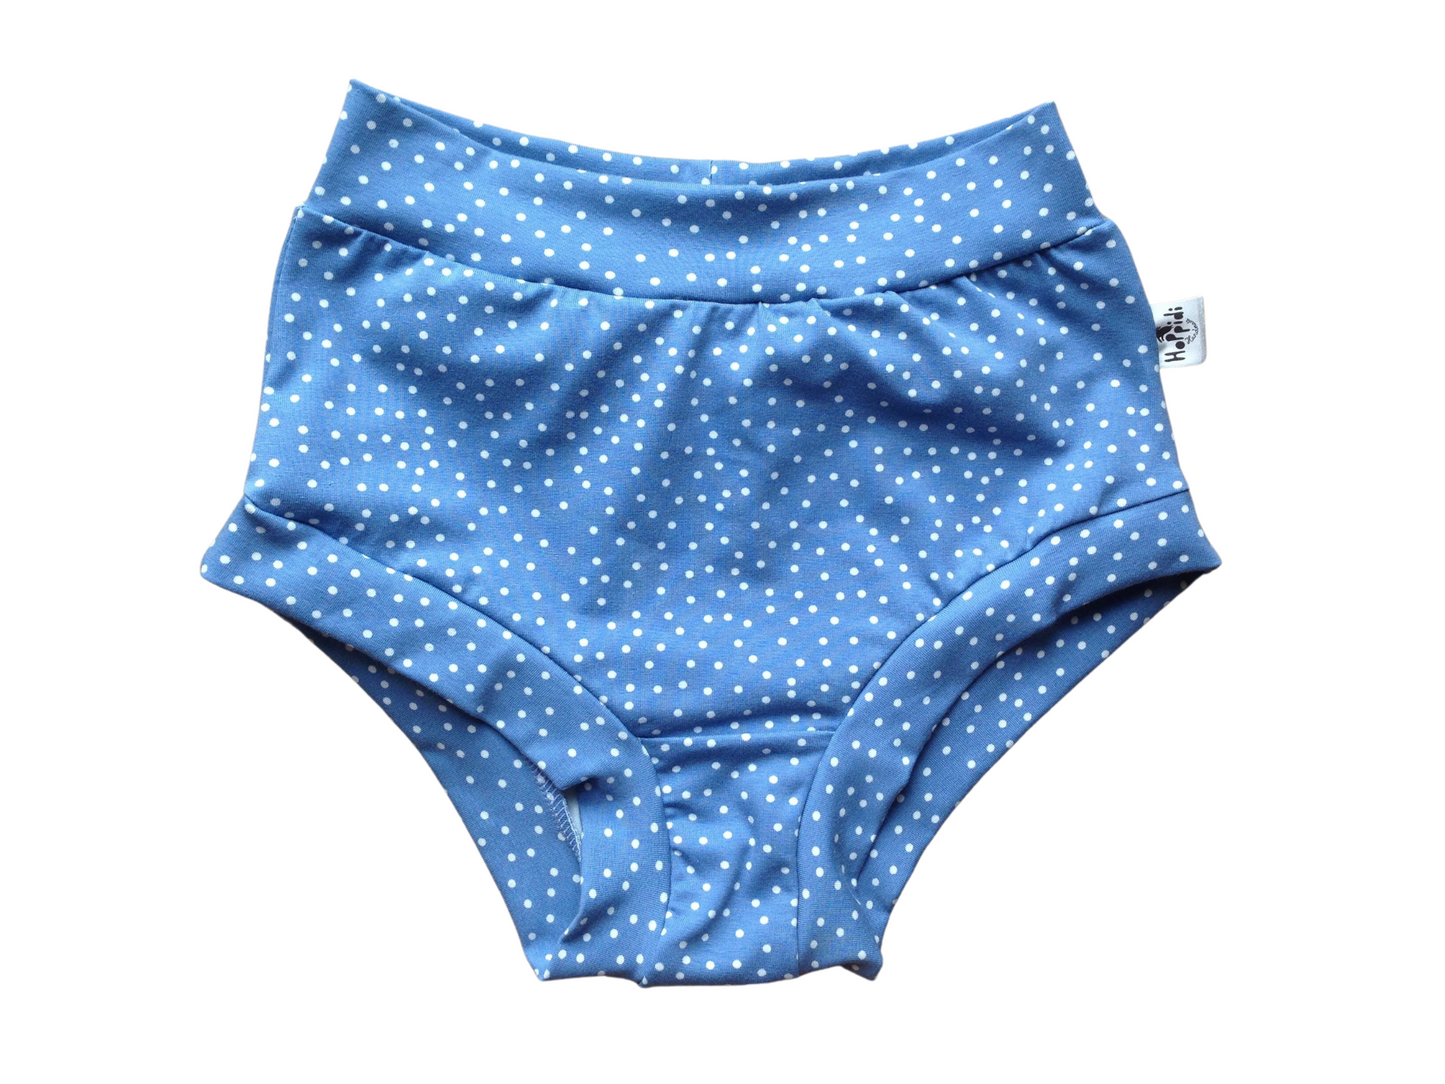 Stonewash dots high waisted organic women's boyleg or brief undies